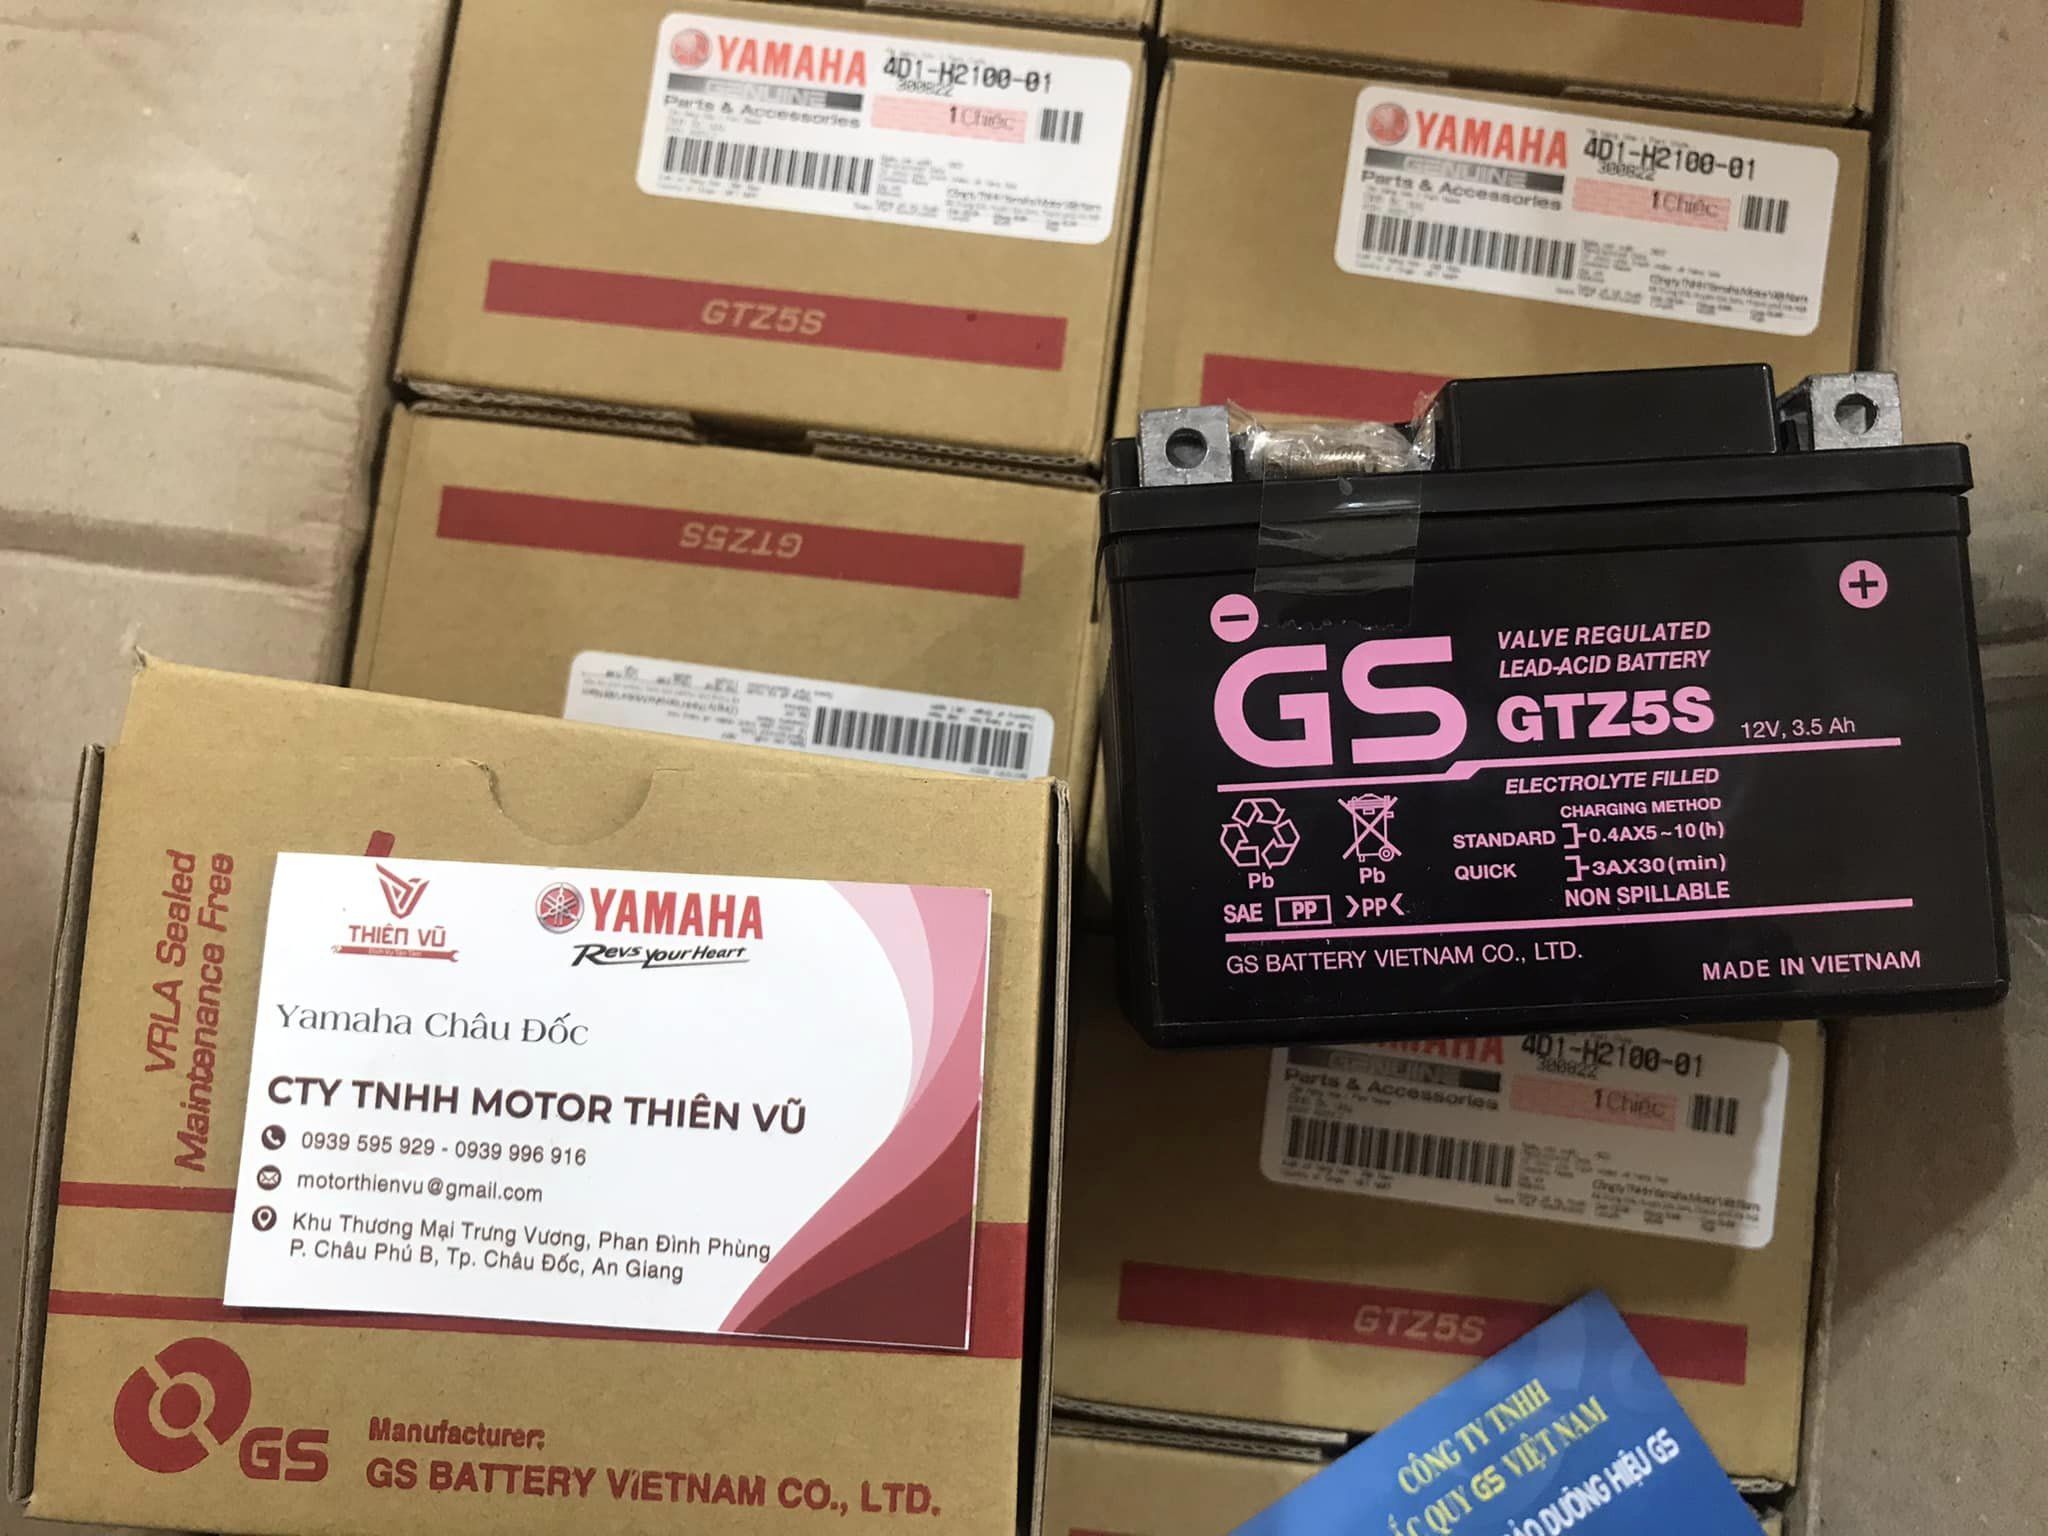 [YAMAHA] Bình ắc quy khô GS GTZ5S, 12V 3.5 Ah